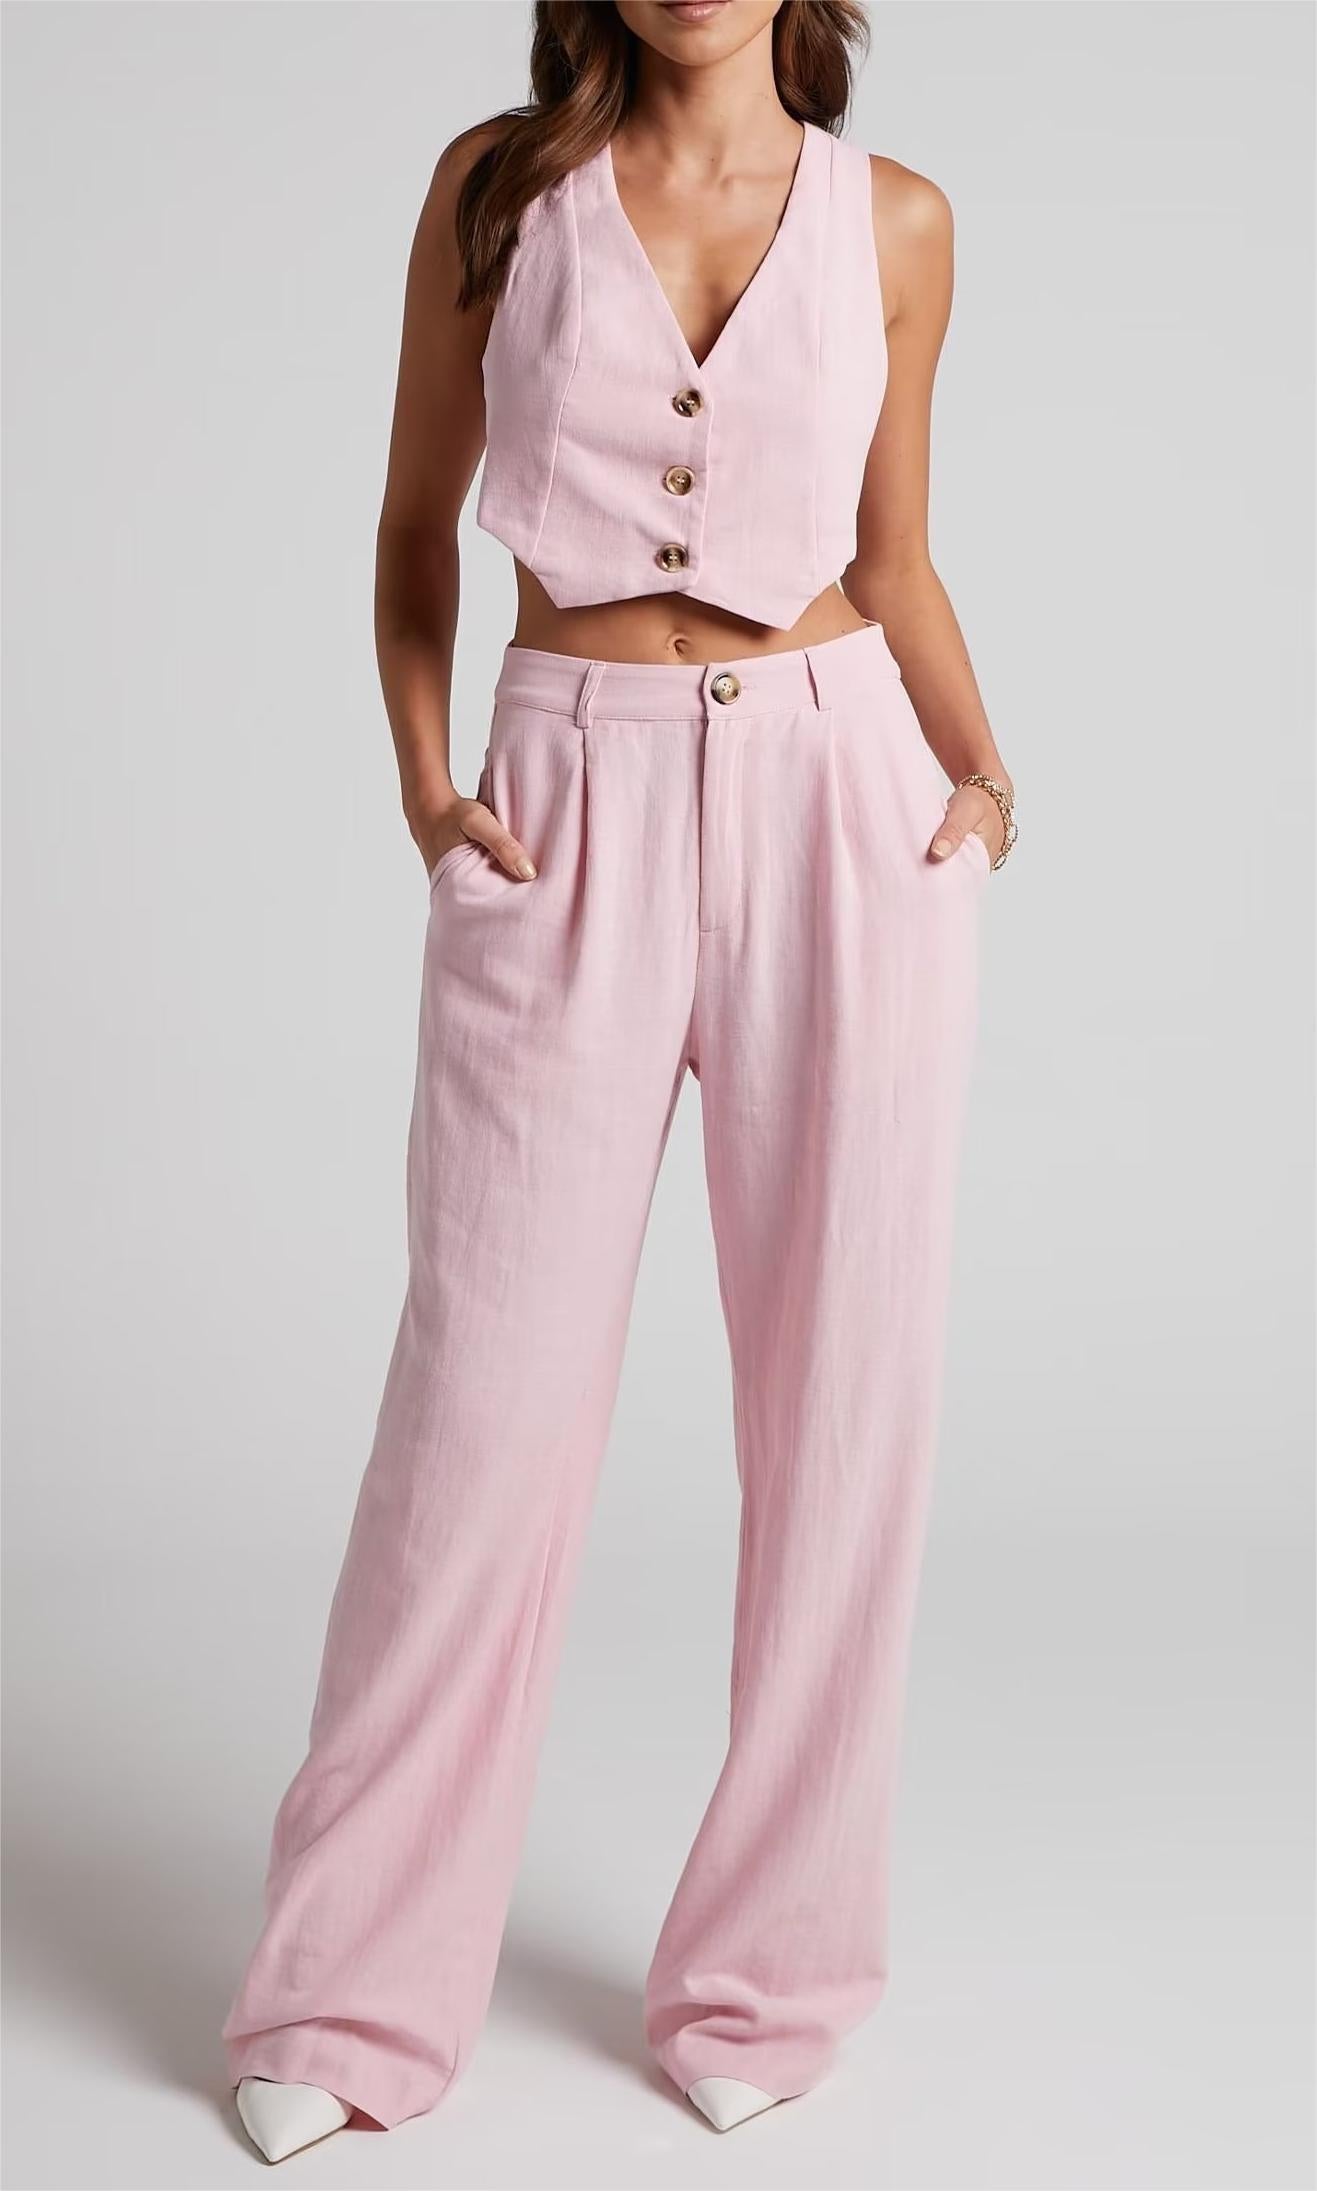 Summer Linen Outfits | Green Crop Top Aesthetic Linen Pants Outfit Summer  2-piece set!